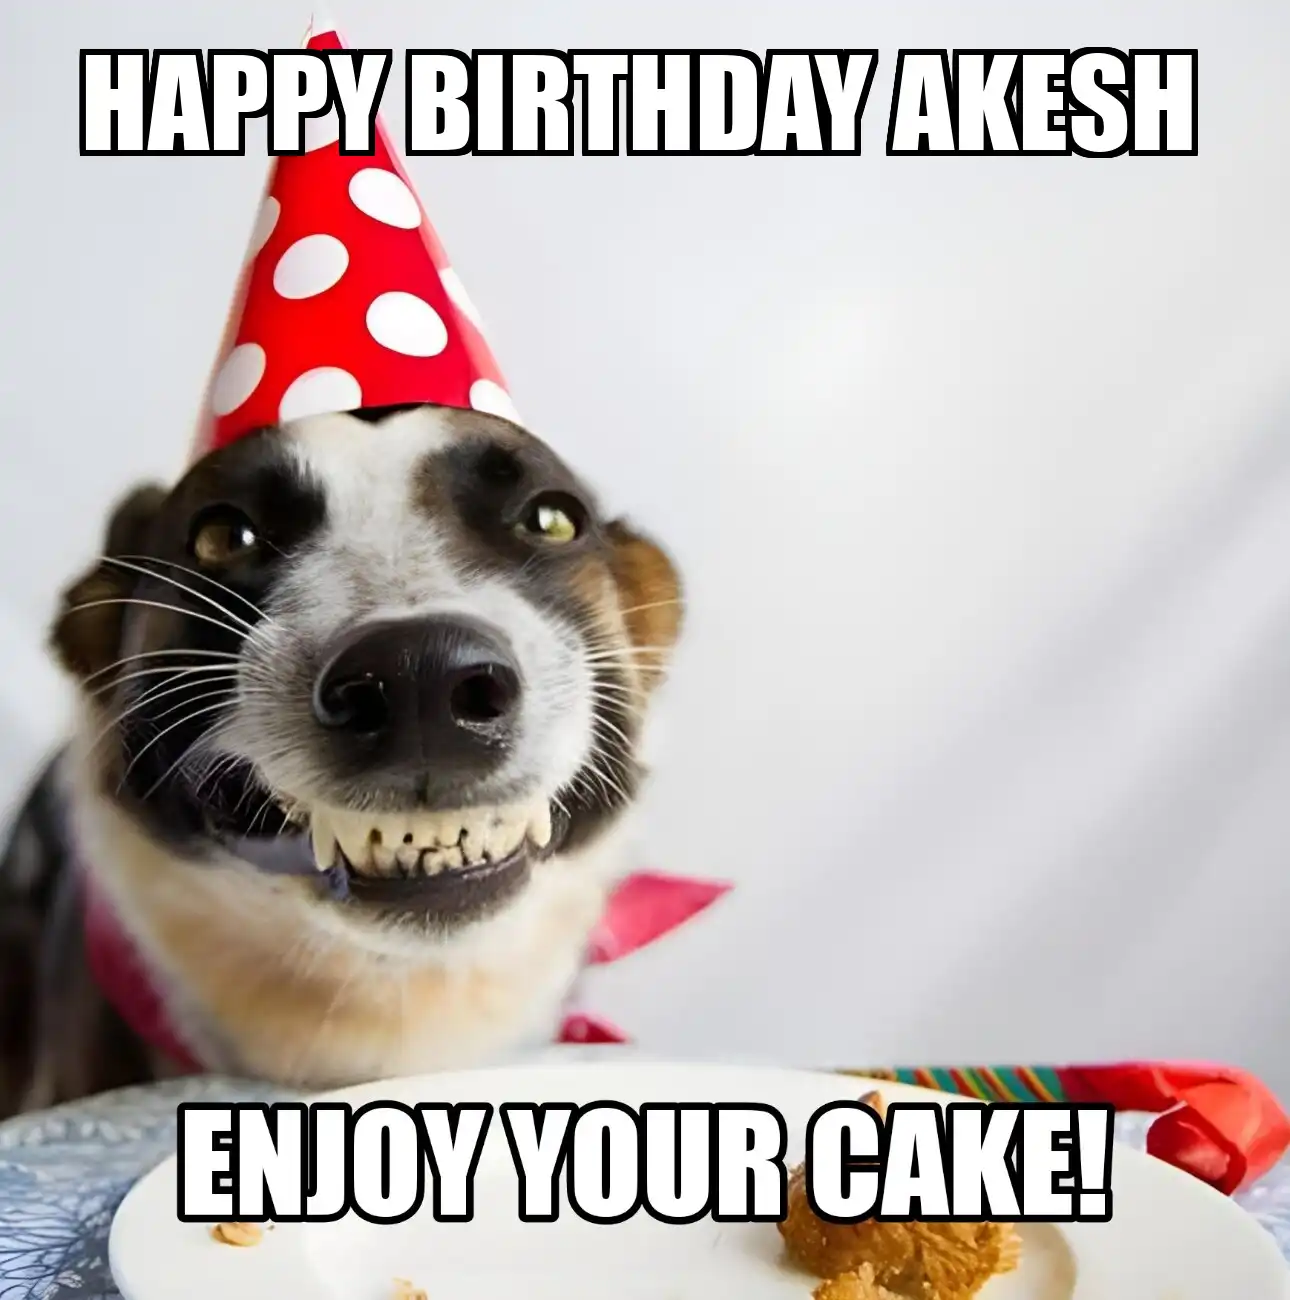 Happy Birthday Akesh Enjoy Your Cake Dog Meme